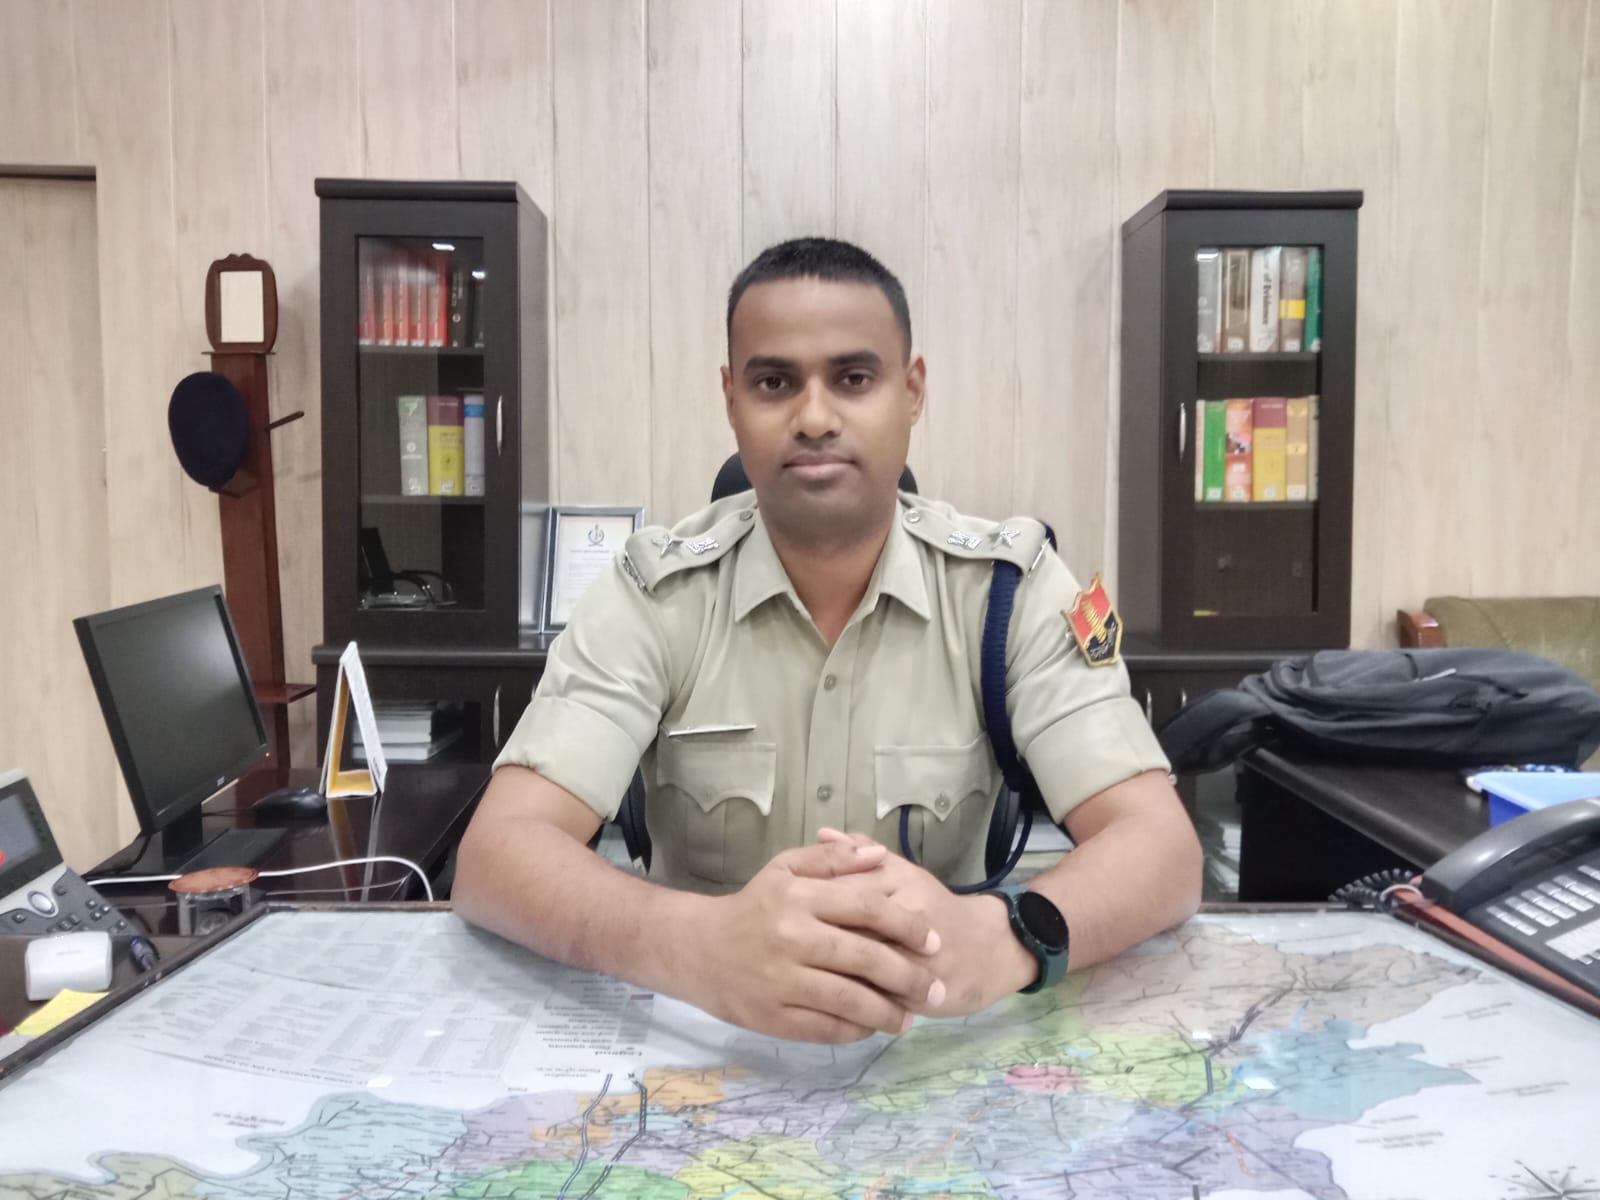 पुलिस अधीक्षक धर्मेंद्र सिंह के निर्देशानुसार यातायात नियमों के उल्लंघन पर पुलिस कर रही है ताबड़तोड़ कार्रवाई | New India Times